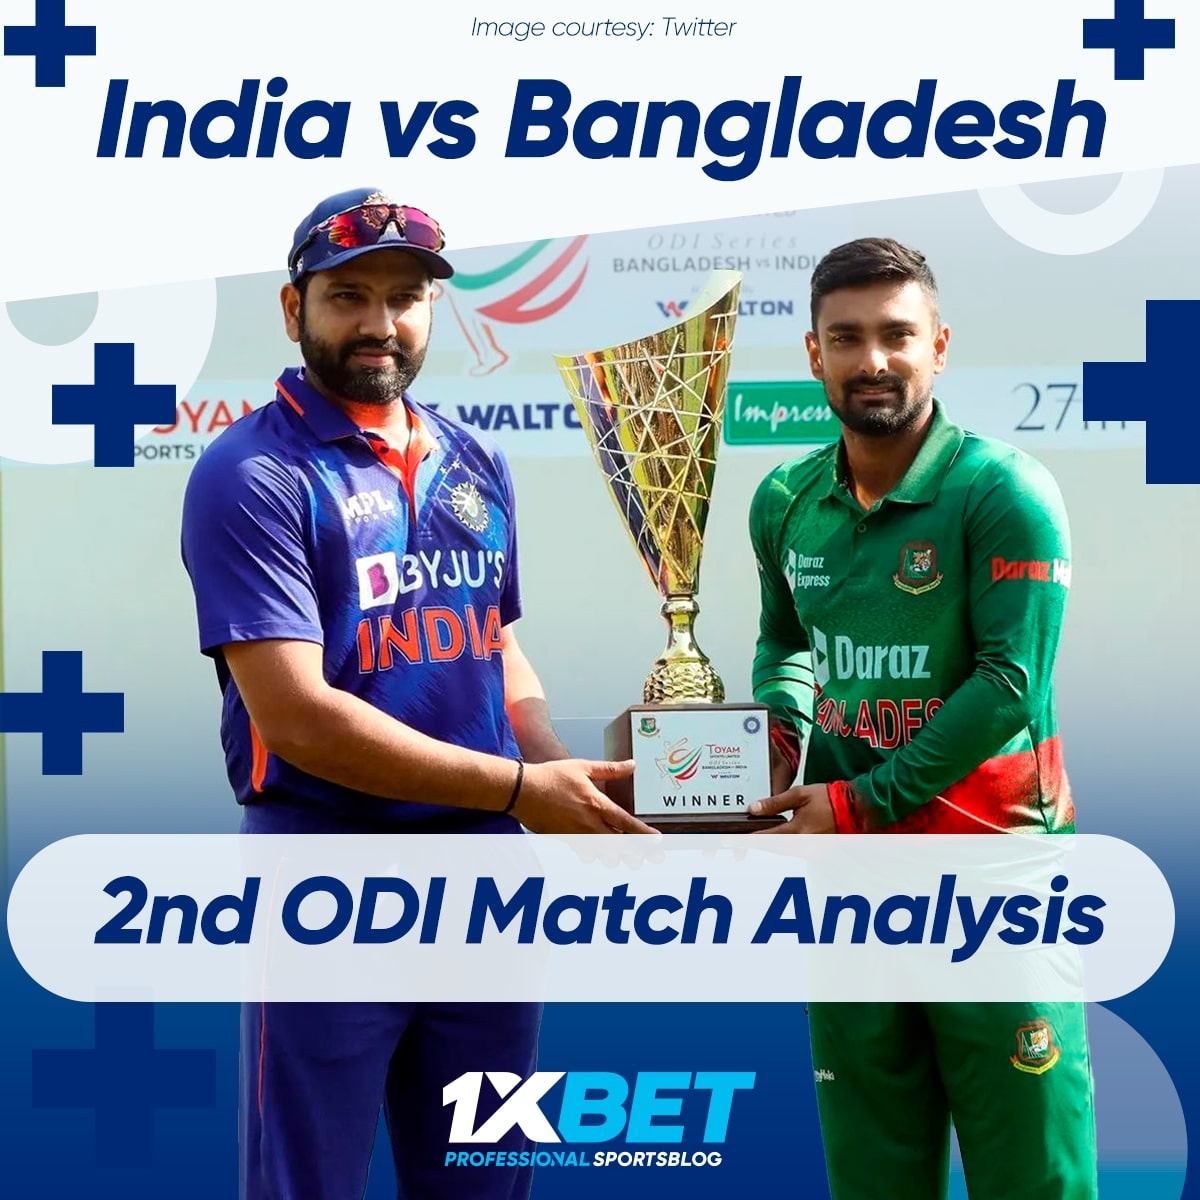 India vs Bangladesh, 2nd ODI Match Analysis